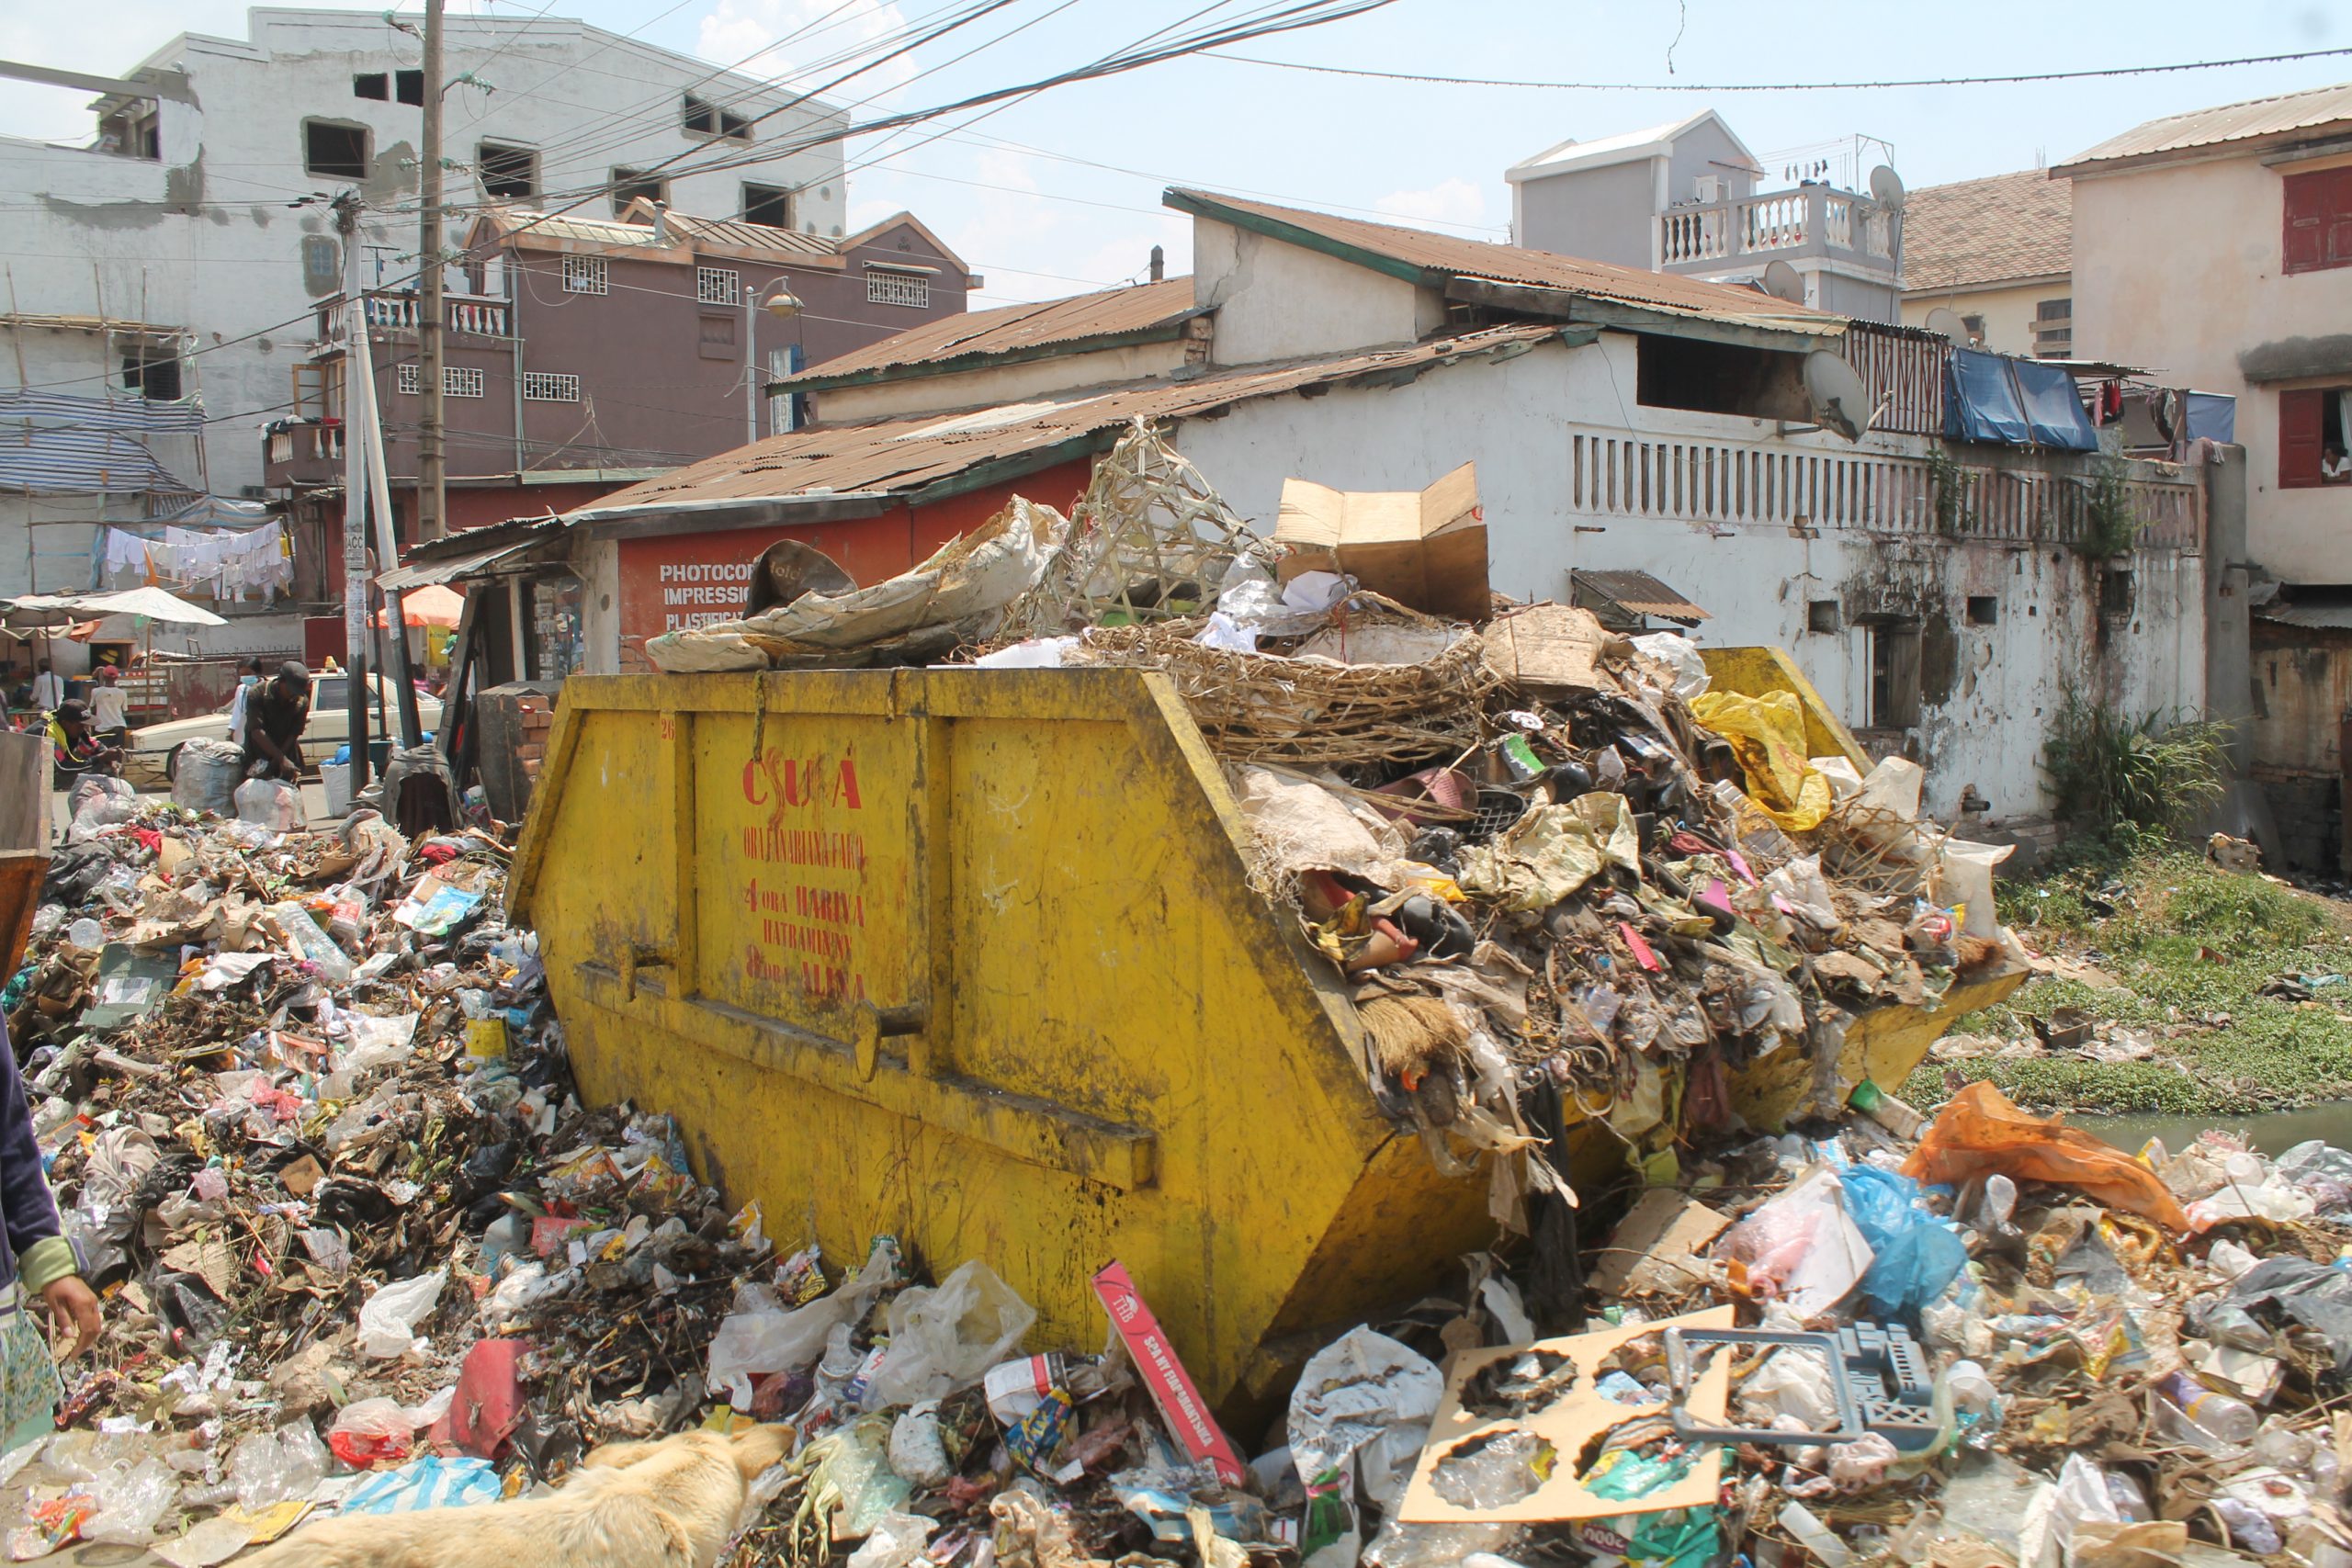 Bacs à ordures en débordement : En cause, le non-respect des horaires de sortie des poubelles